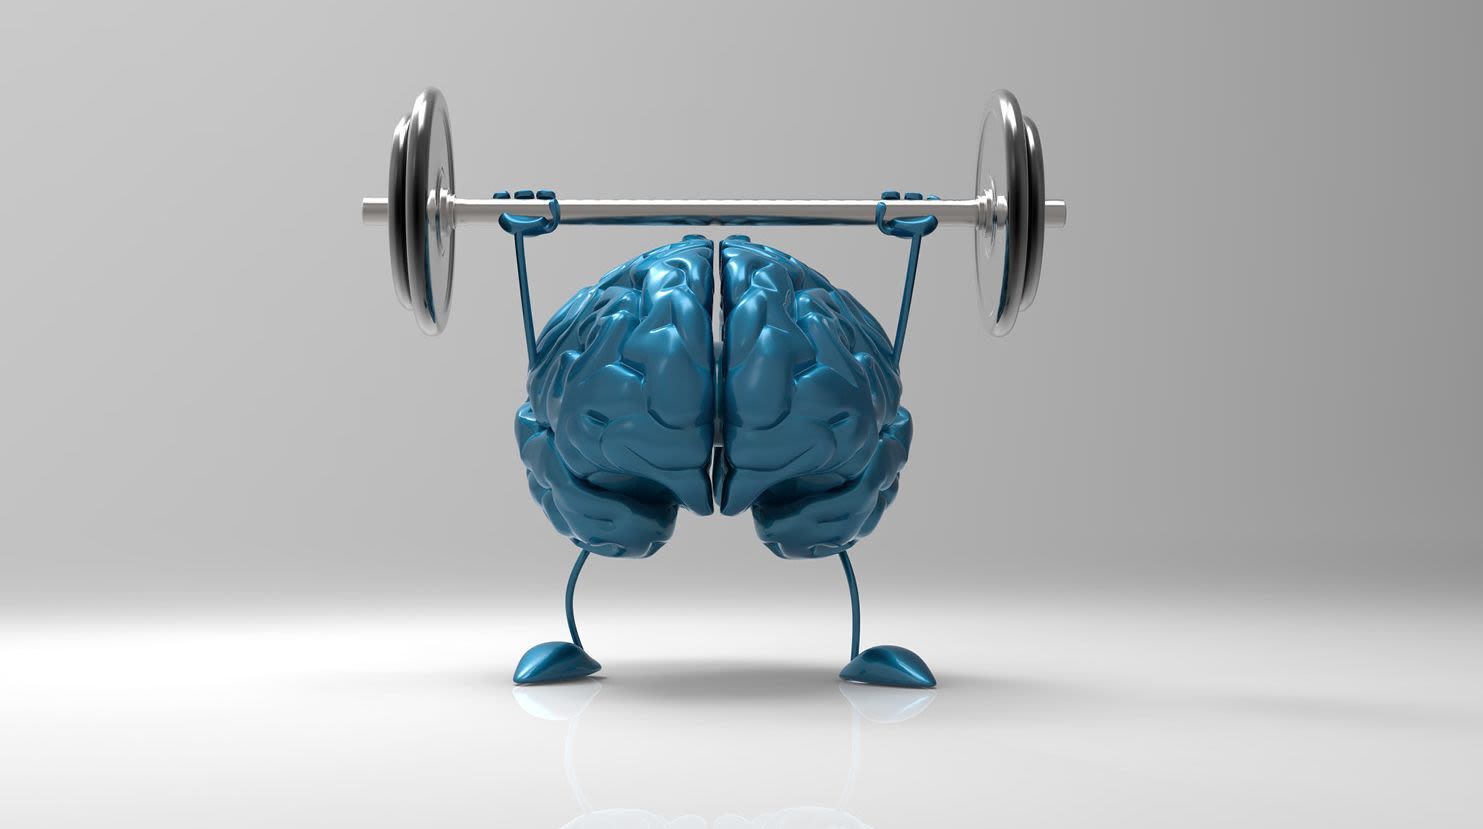 ״והמוח רץ״ - כיצד מושפע המוח שלנו מפעילות גופנית